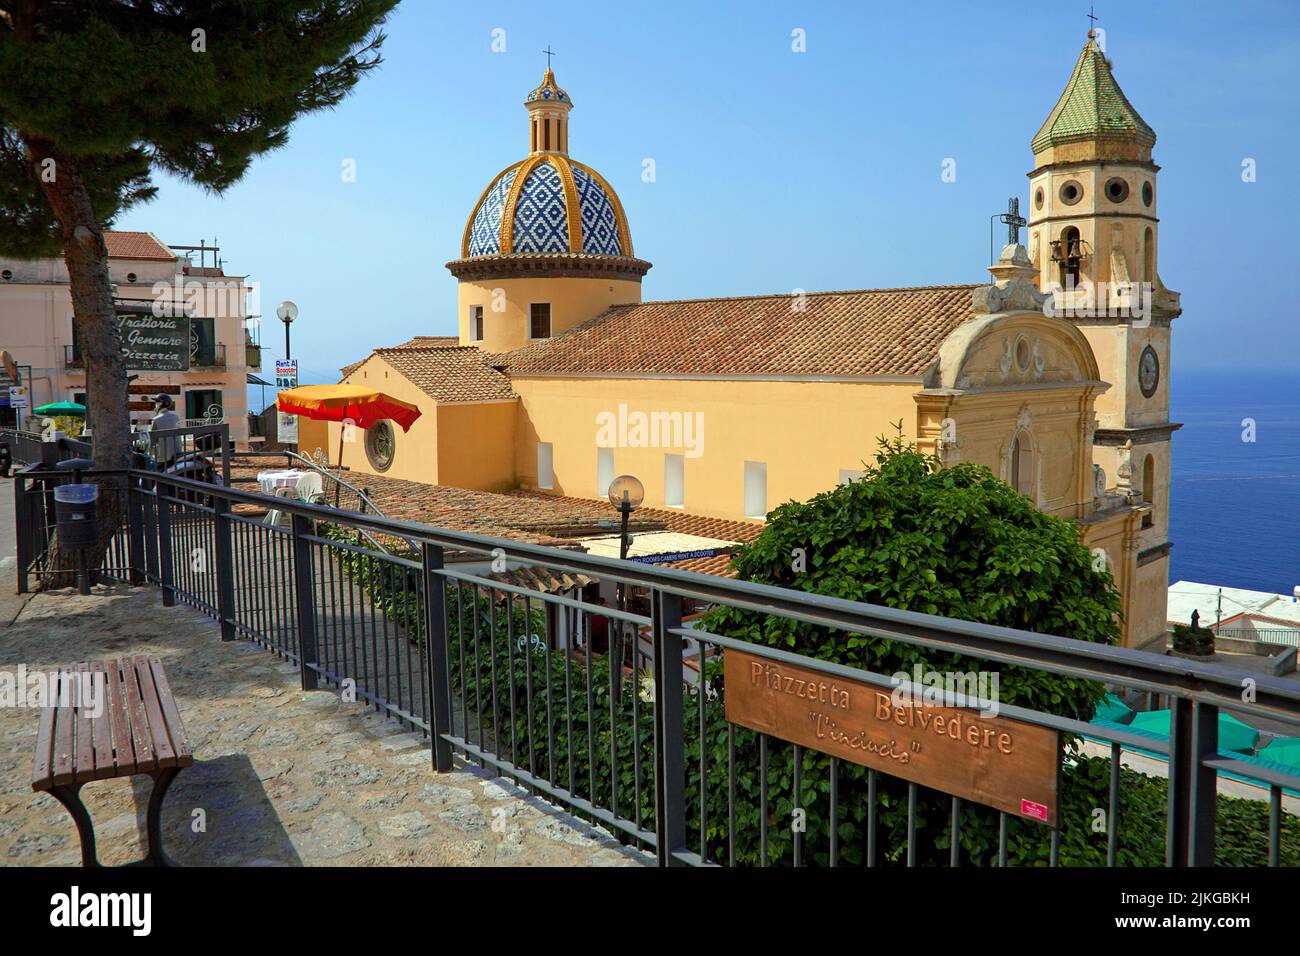 Eglise San Gennaro dans le village Praiano, côte amalfitaine, site classé au patrimoine mondial de l'UNESCO, Campanie, Italie, mer Méditerranée, Europe Banque D'Images